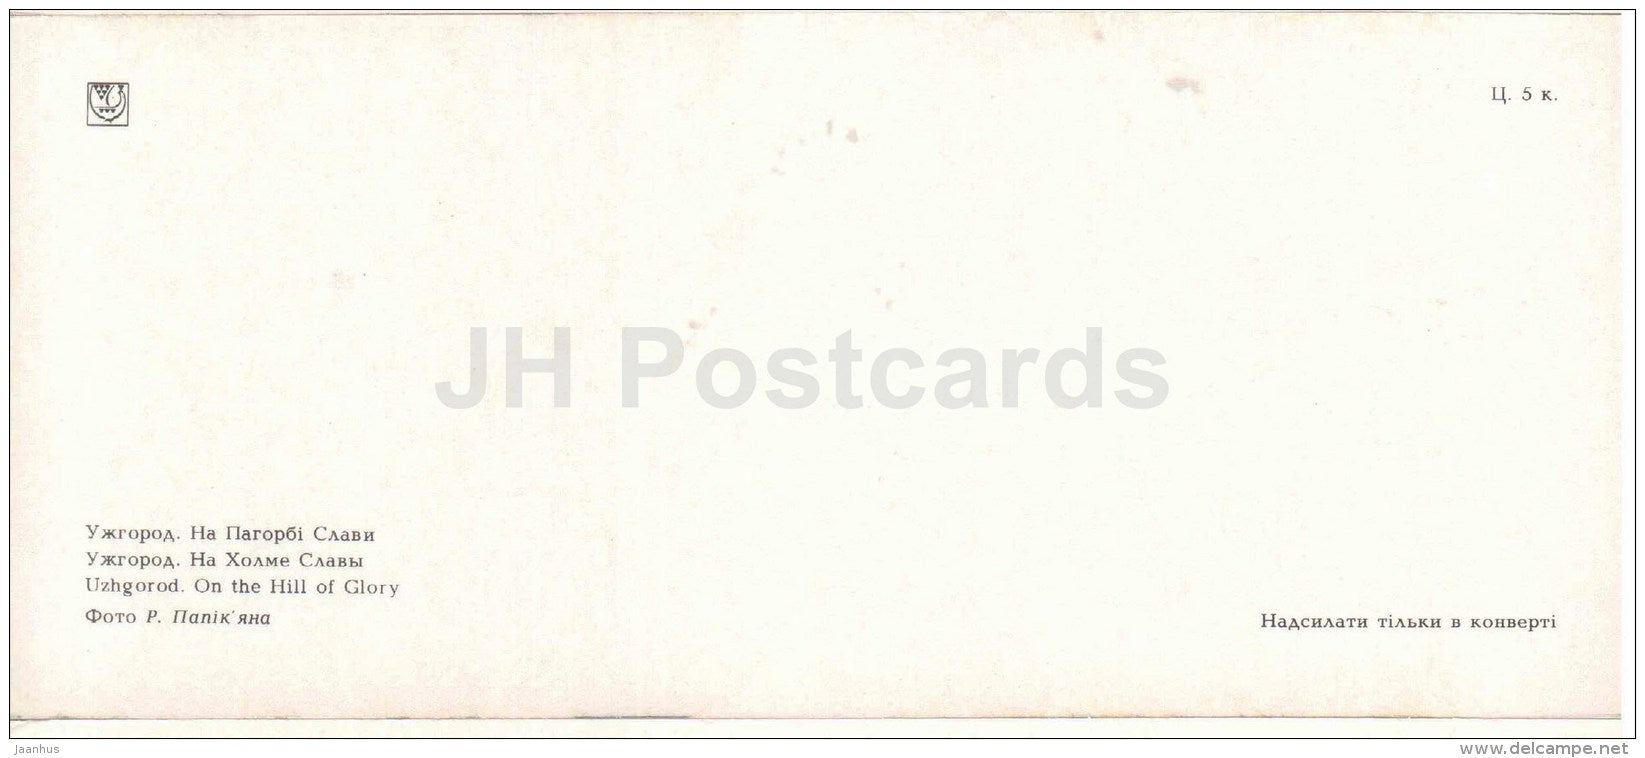 on the Hill of Glory - obelisk - Uzhgorod - Uzhhorod - 1986 - Ukraine USSR - unused - JH Postcards